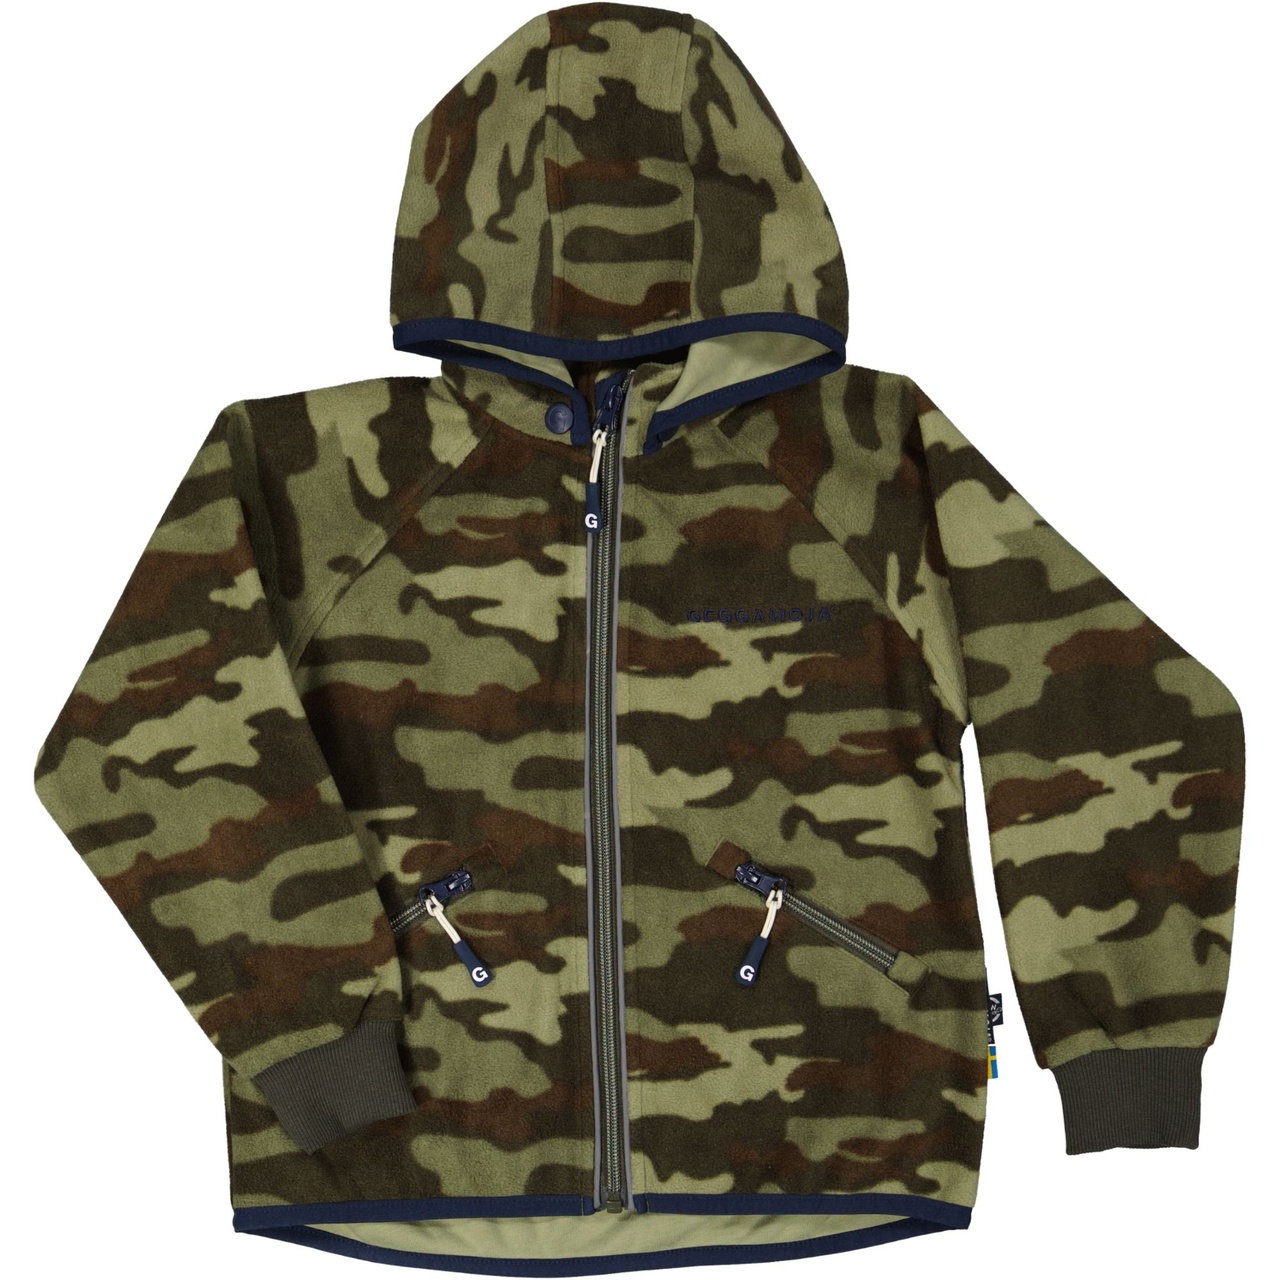 Wind fleece jacket Camouflage 110/116